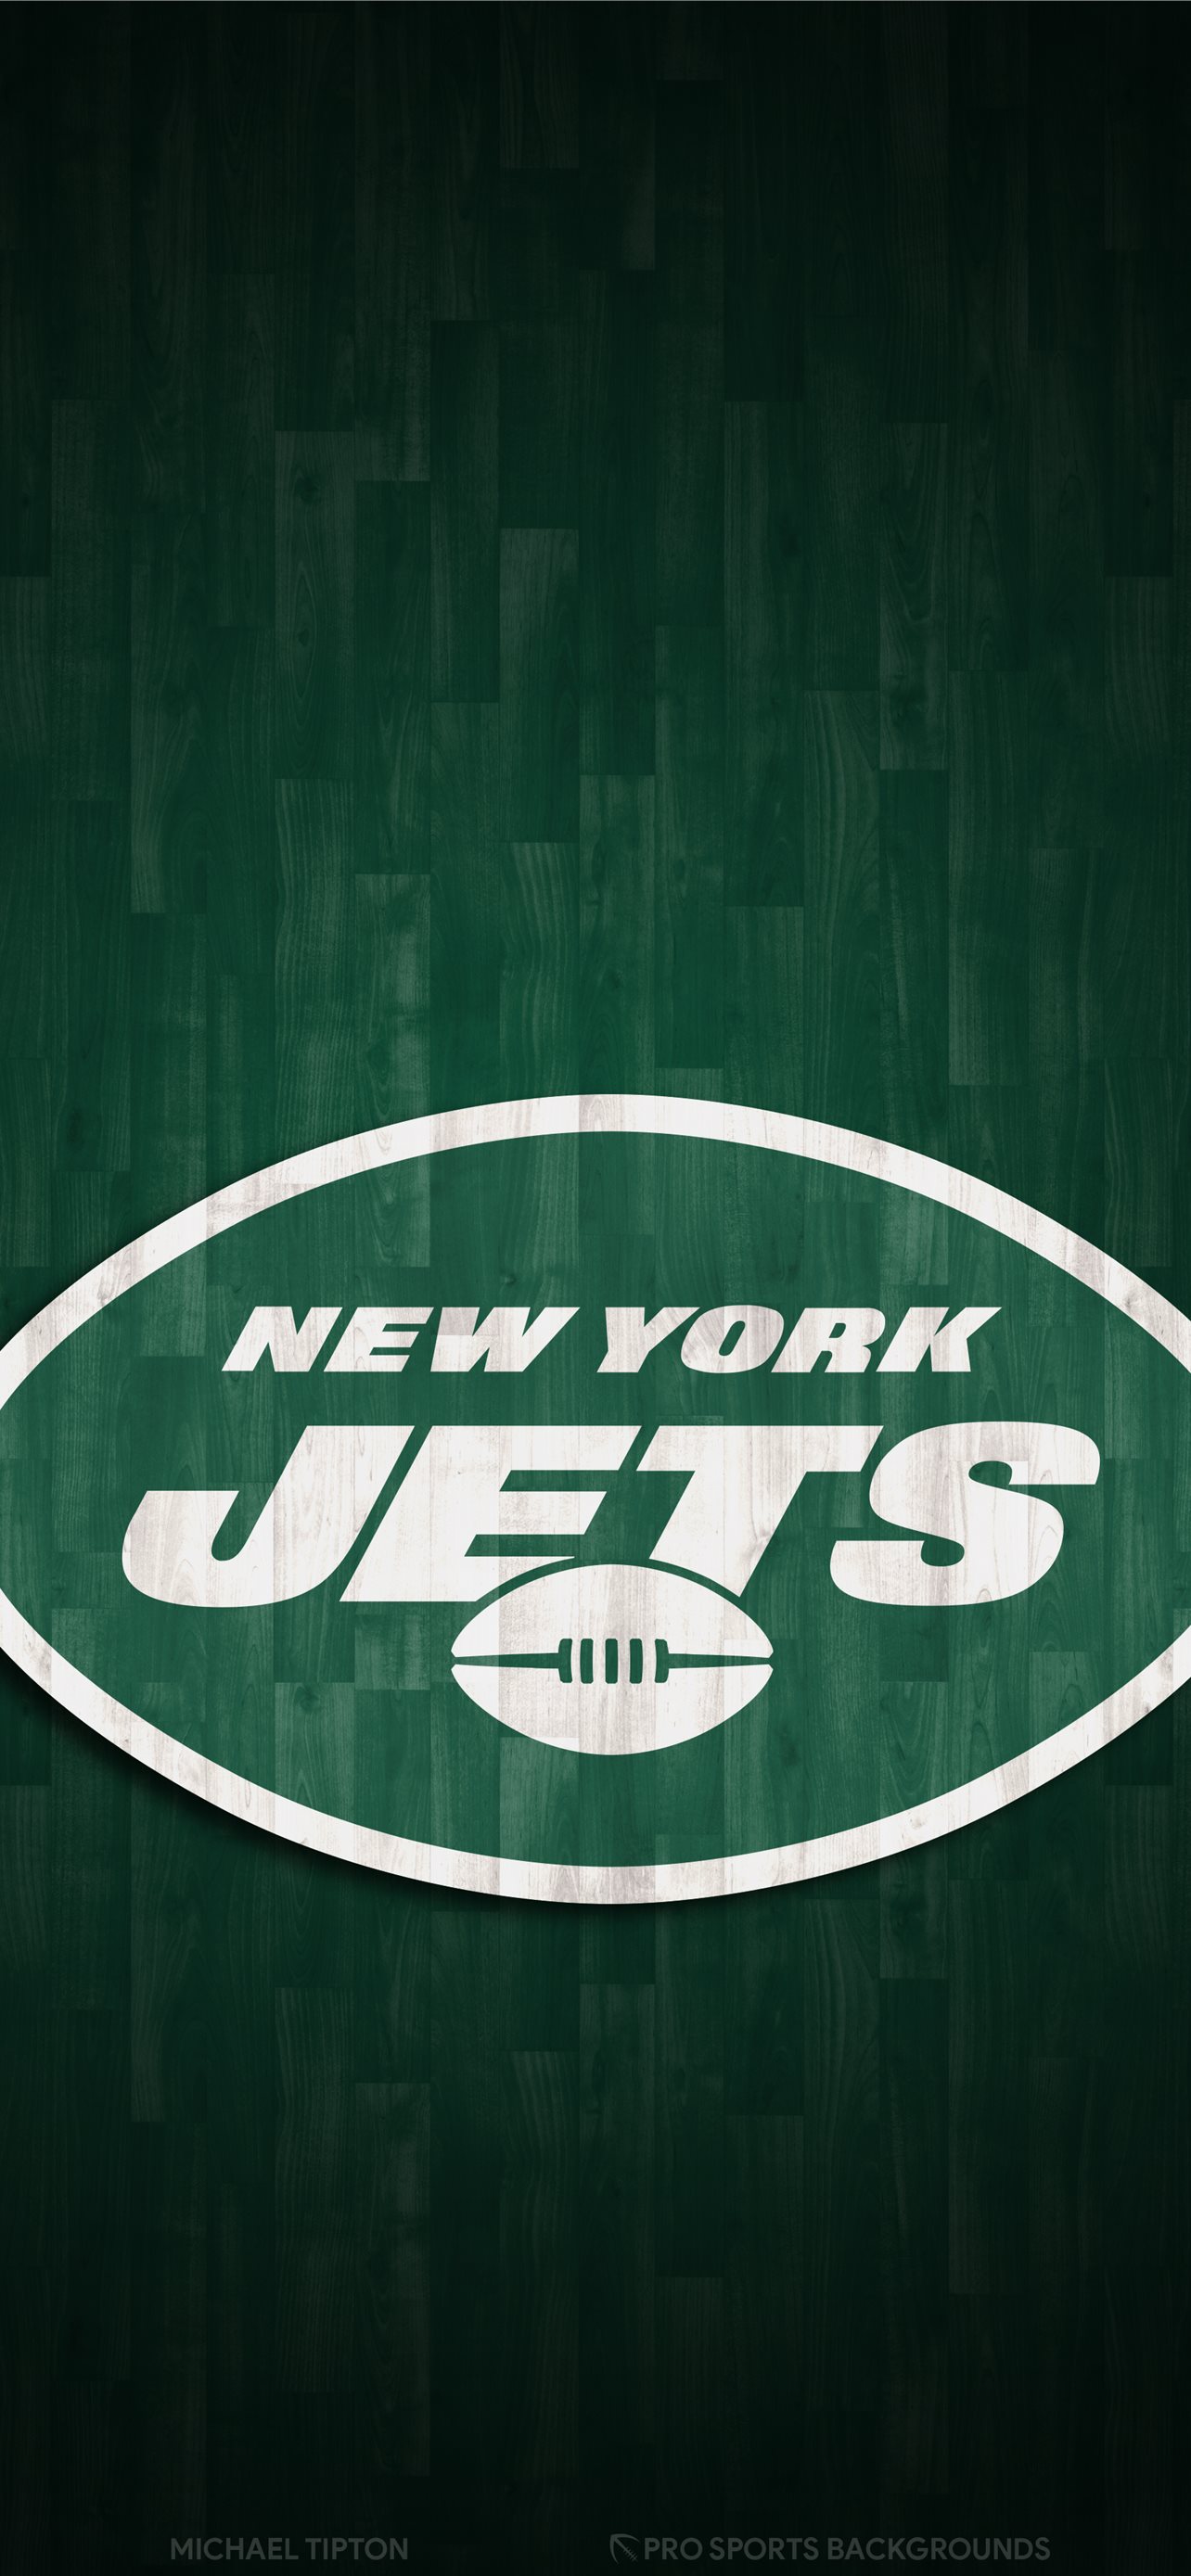 𝙃𝙚𝙡𝙢𝙚𝙩 𝘼𝙙𝙙𝙞𝙘𝙩 on Twitter New York Football Giants mobile  wallpaper httpstcom1JNCClSQ3  Twitter